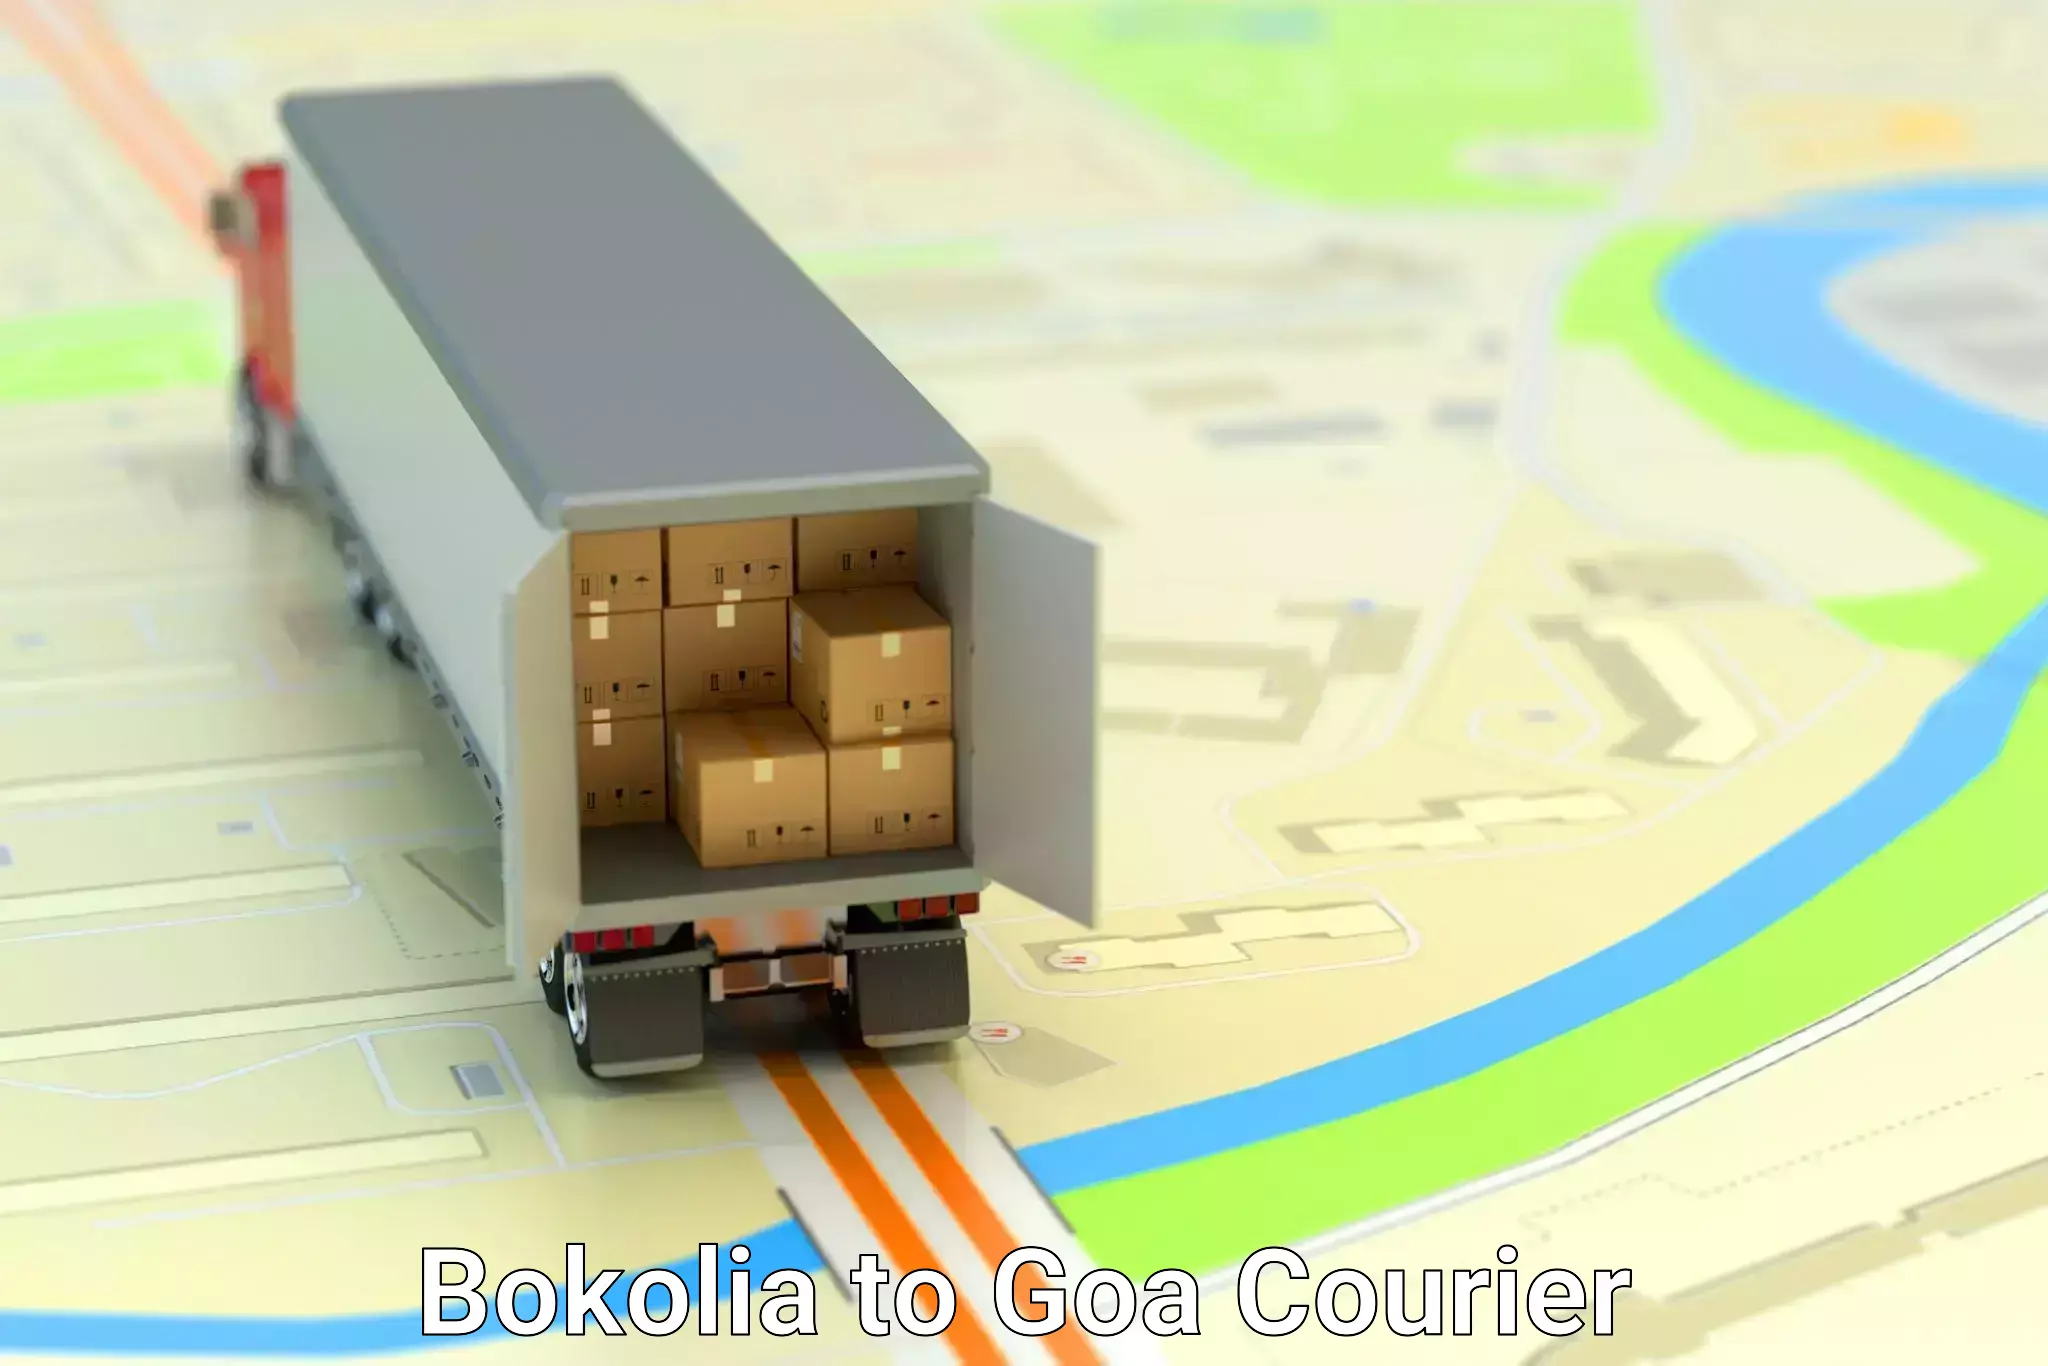 Easy return solutions Bokolia to IIT Goa